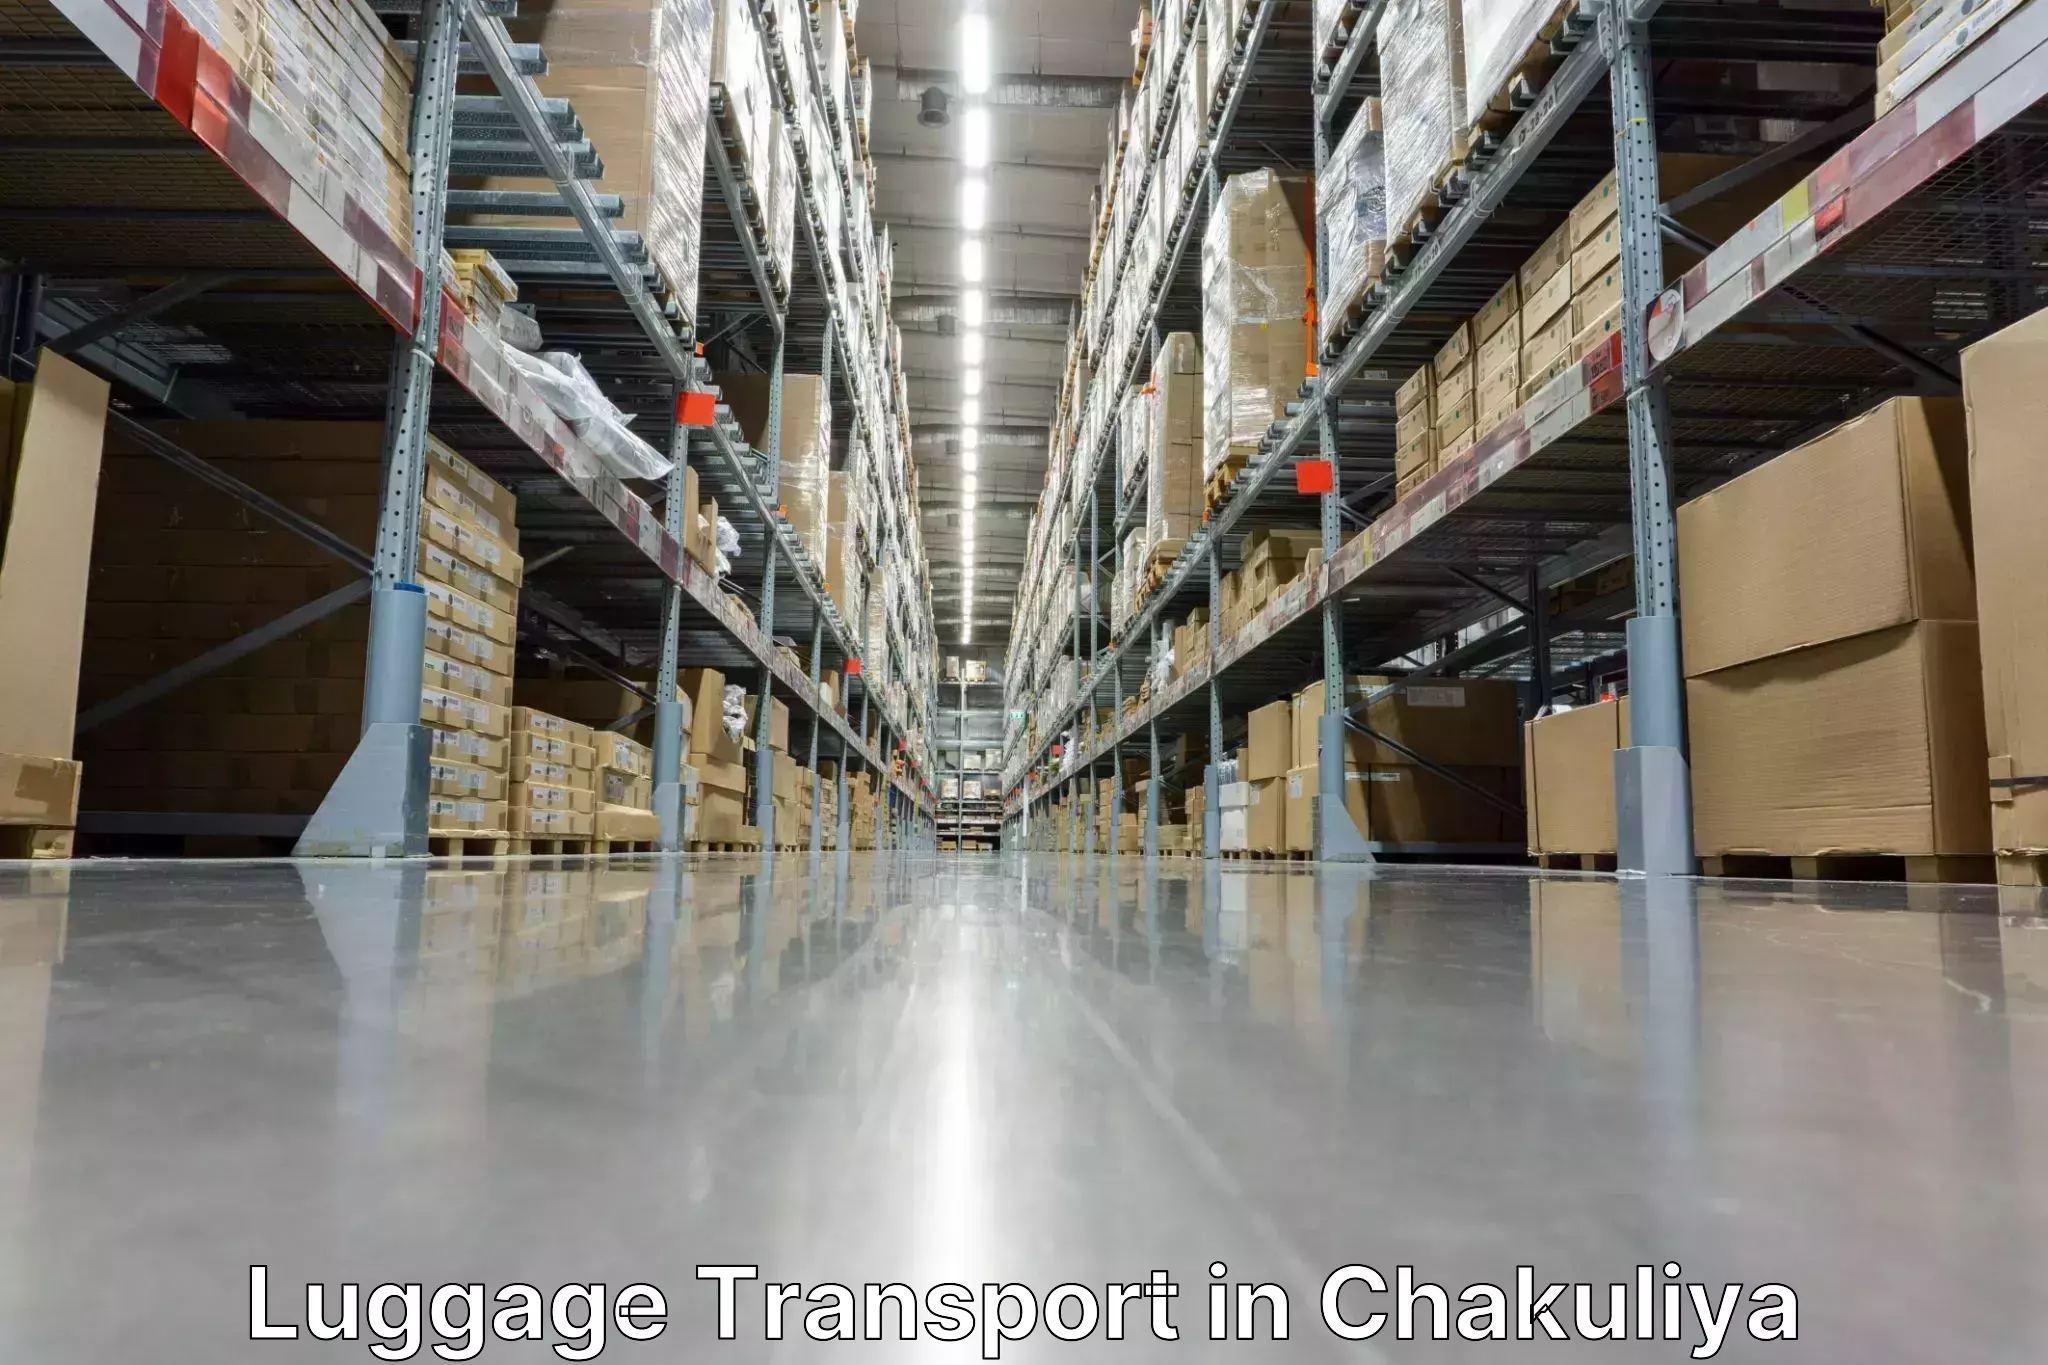 Baggage shipping experience in Chakuliya